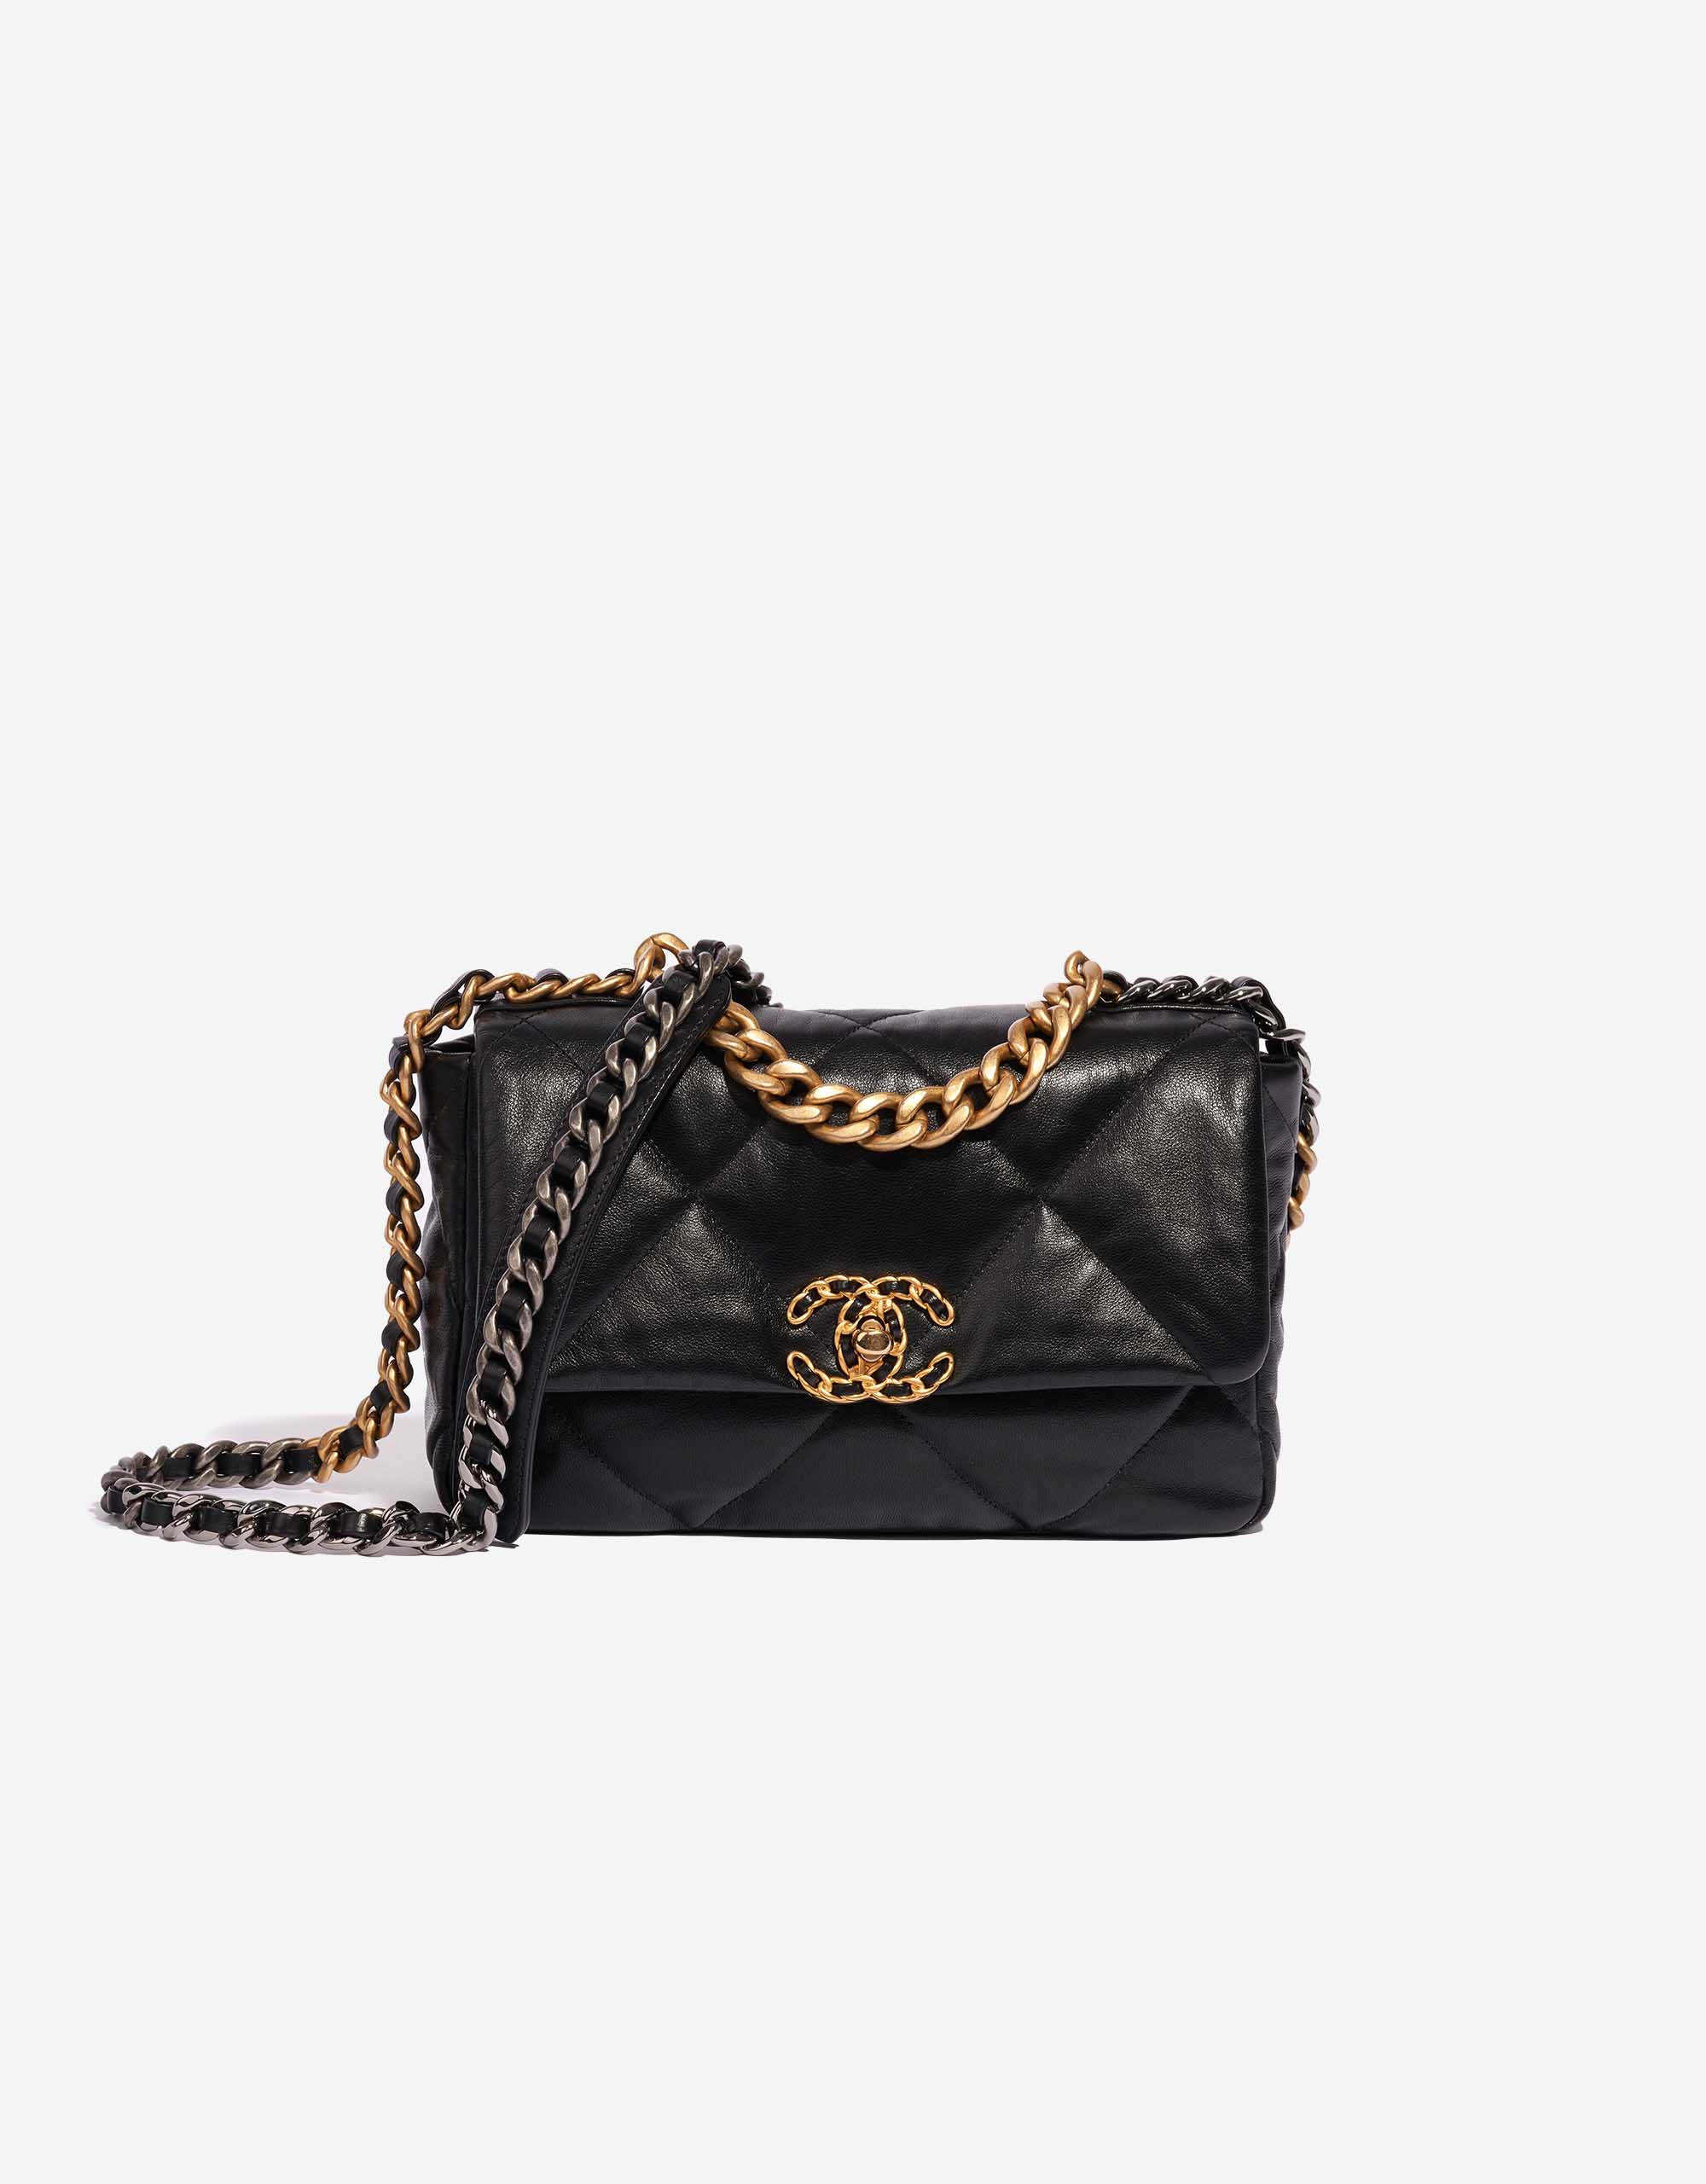 Chanel 19 Flap Bag Lamb Black | SACLÀB